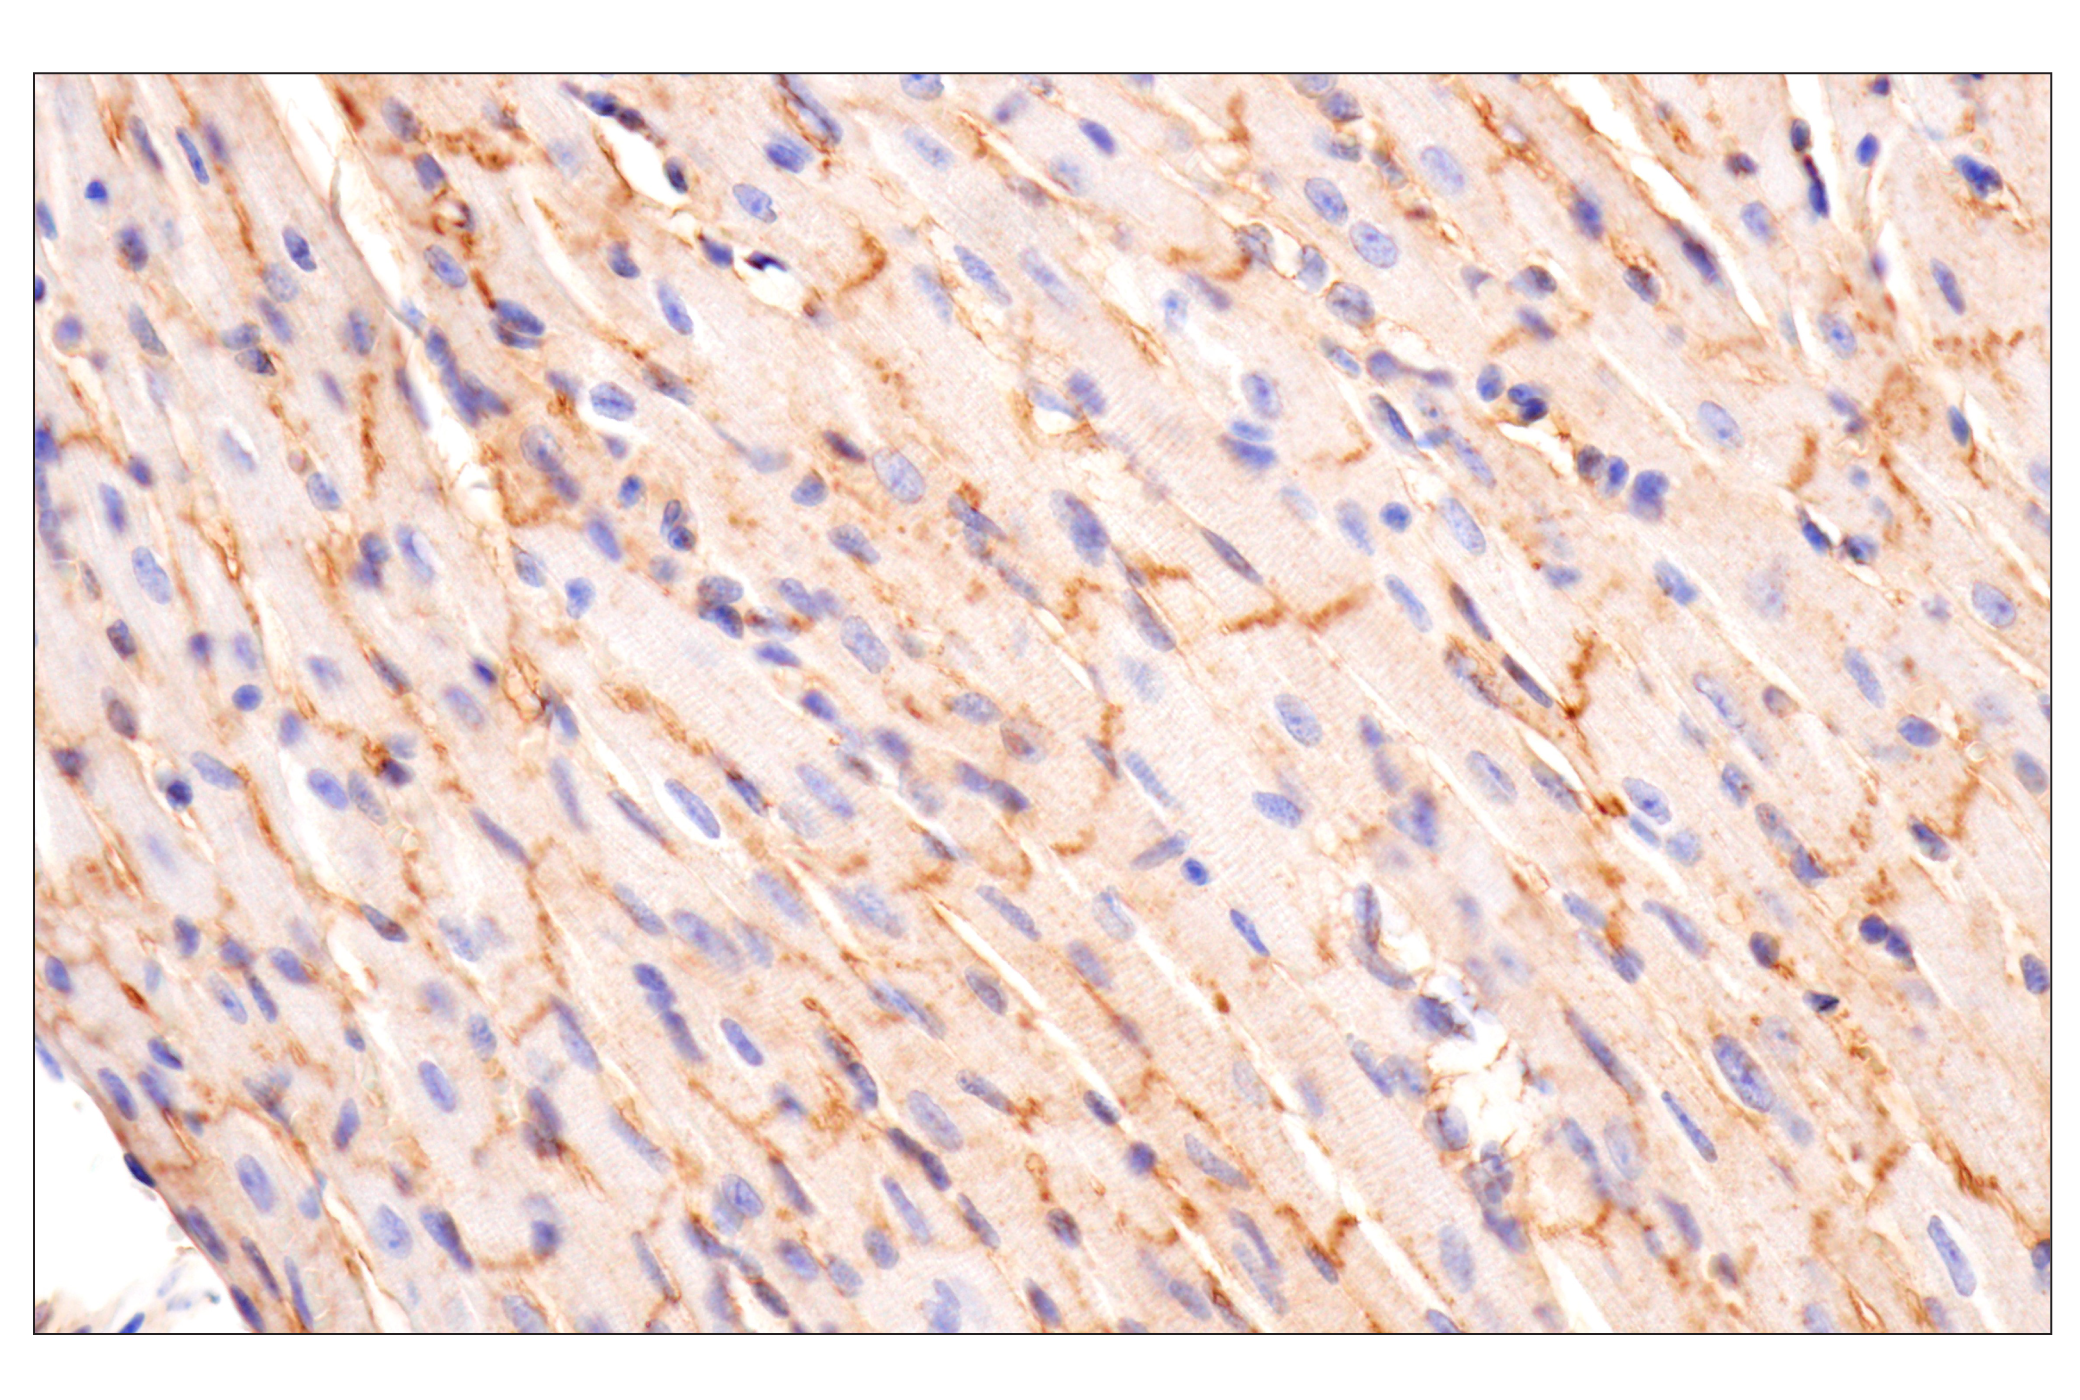  Image 35: Mouse Reactive Exosome Marker Antibody Sampler Kit